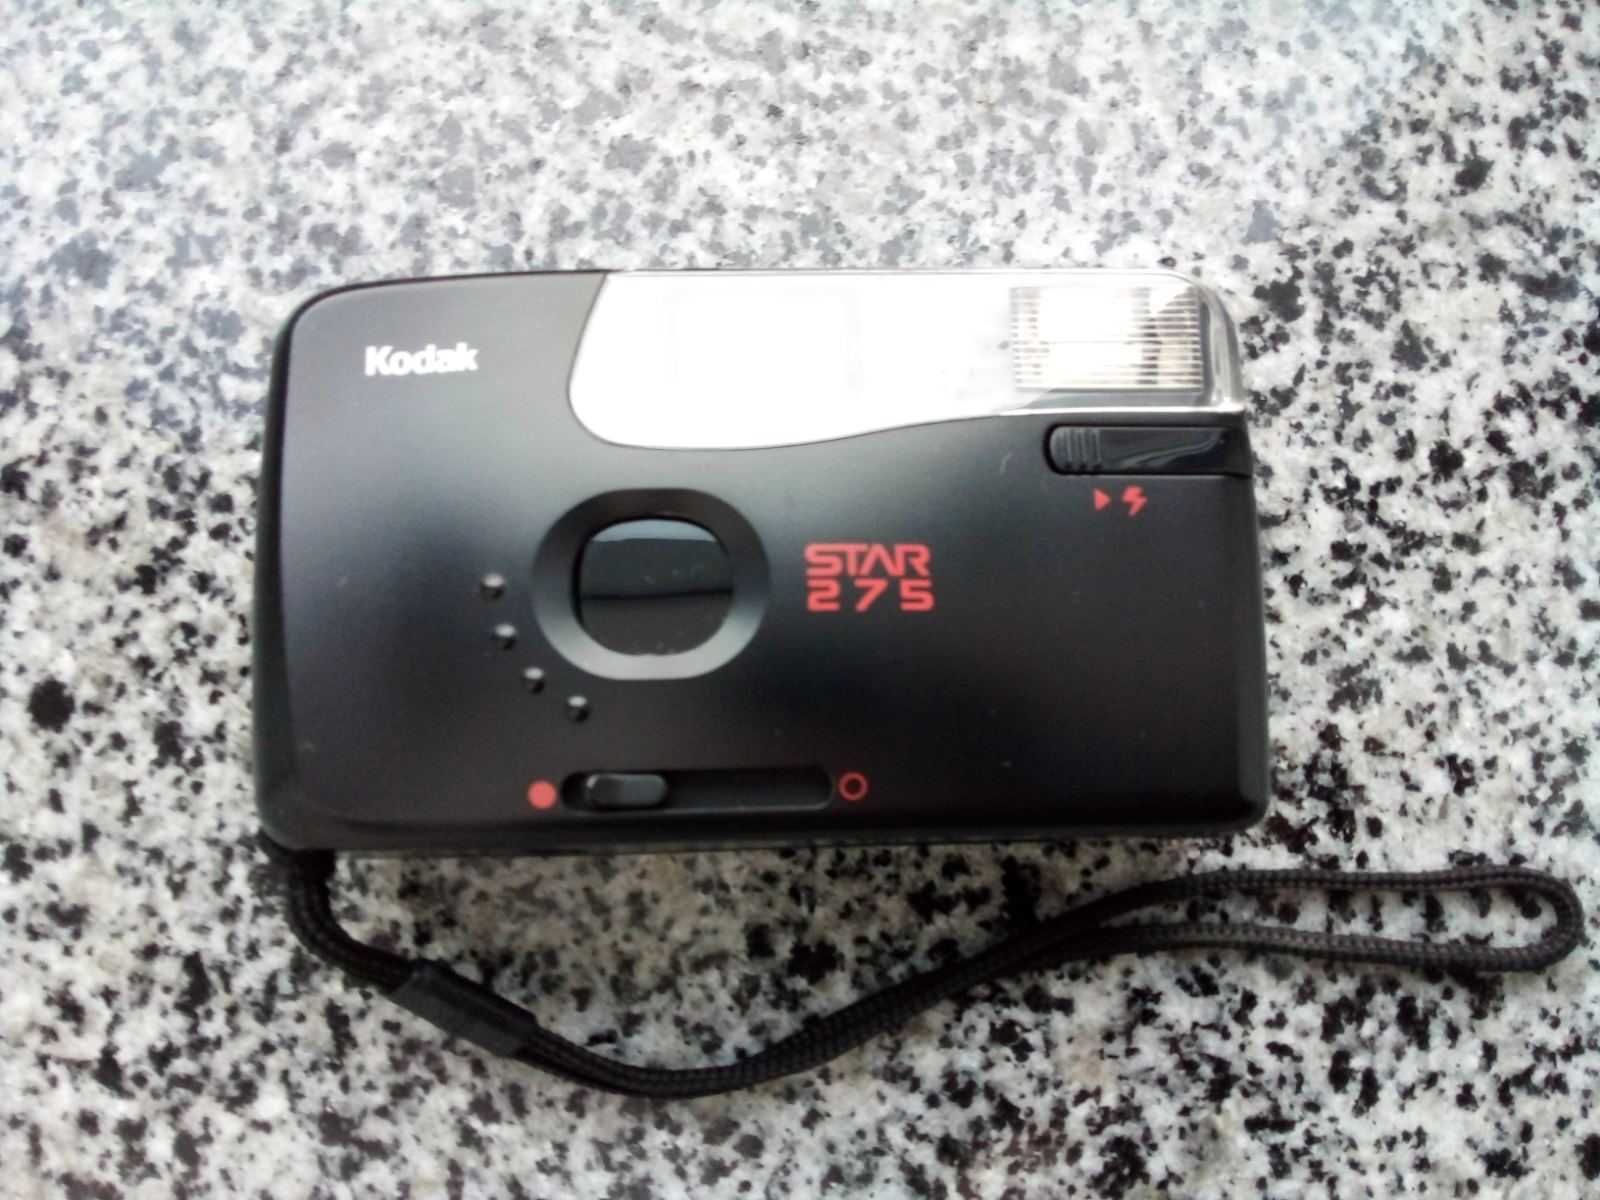 Продам плёночный фотоаппарат KODAK STAR 275